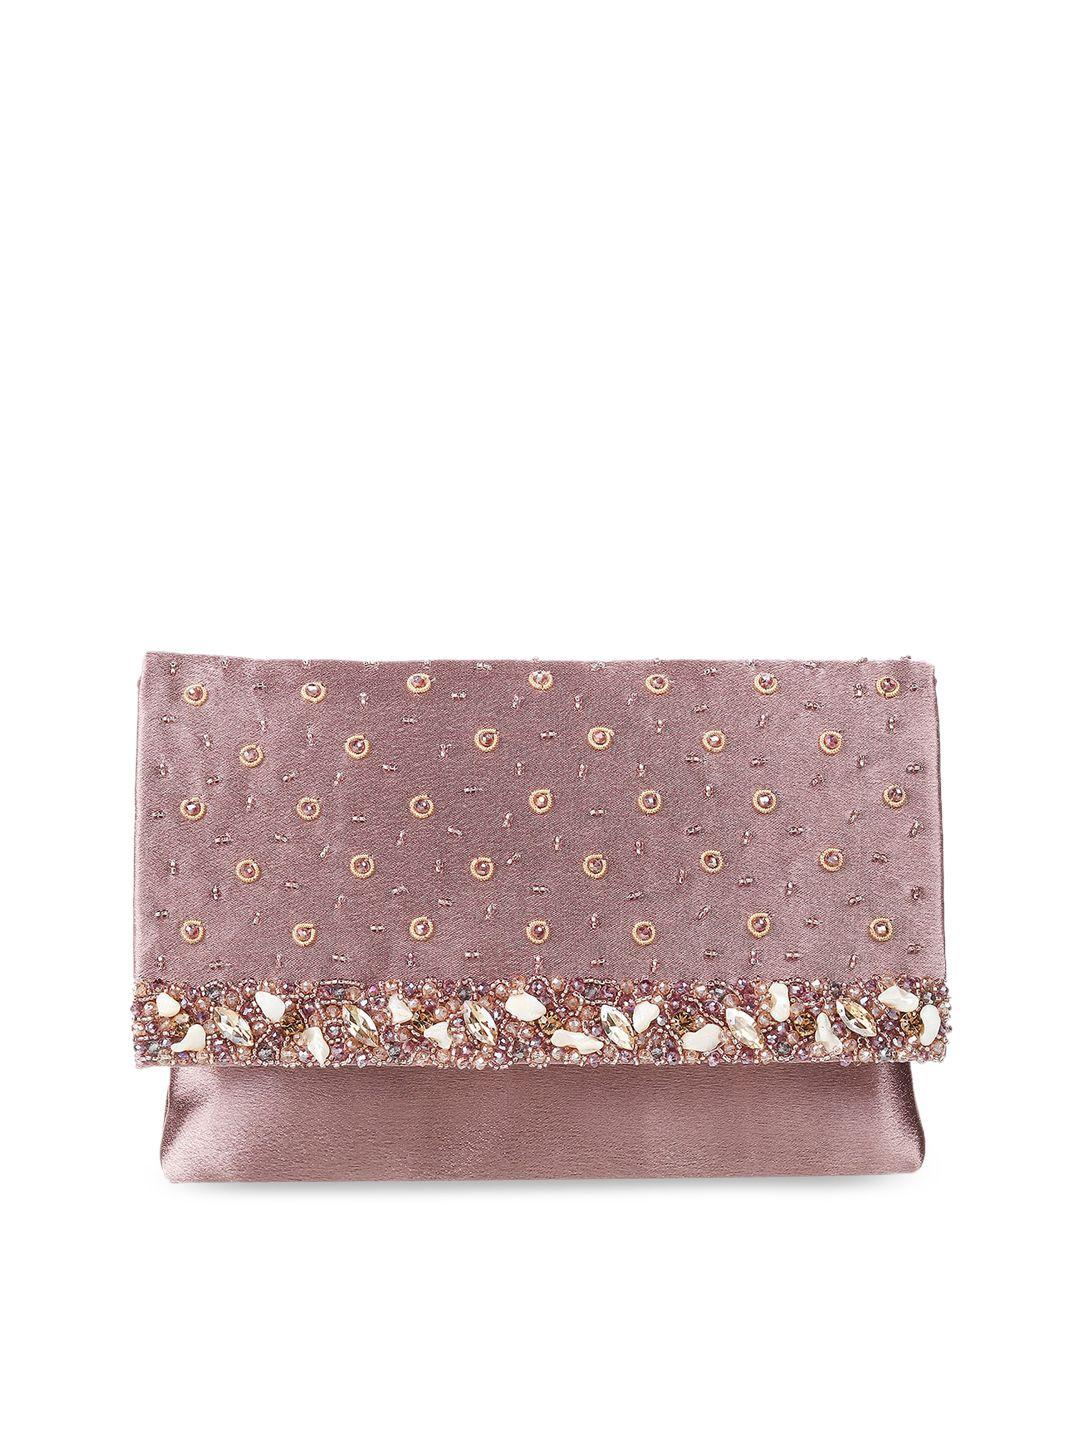 mochi purple & gold-toned embellished envelope clutch